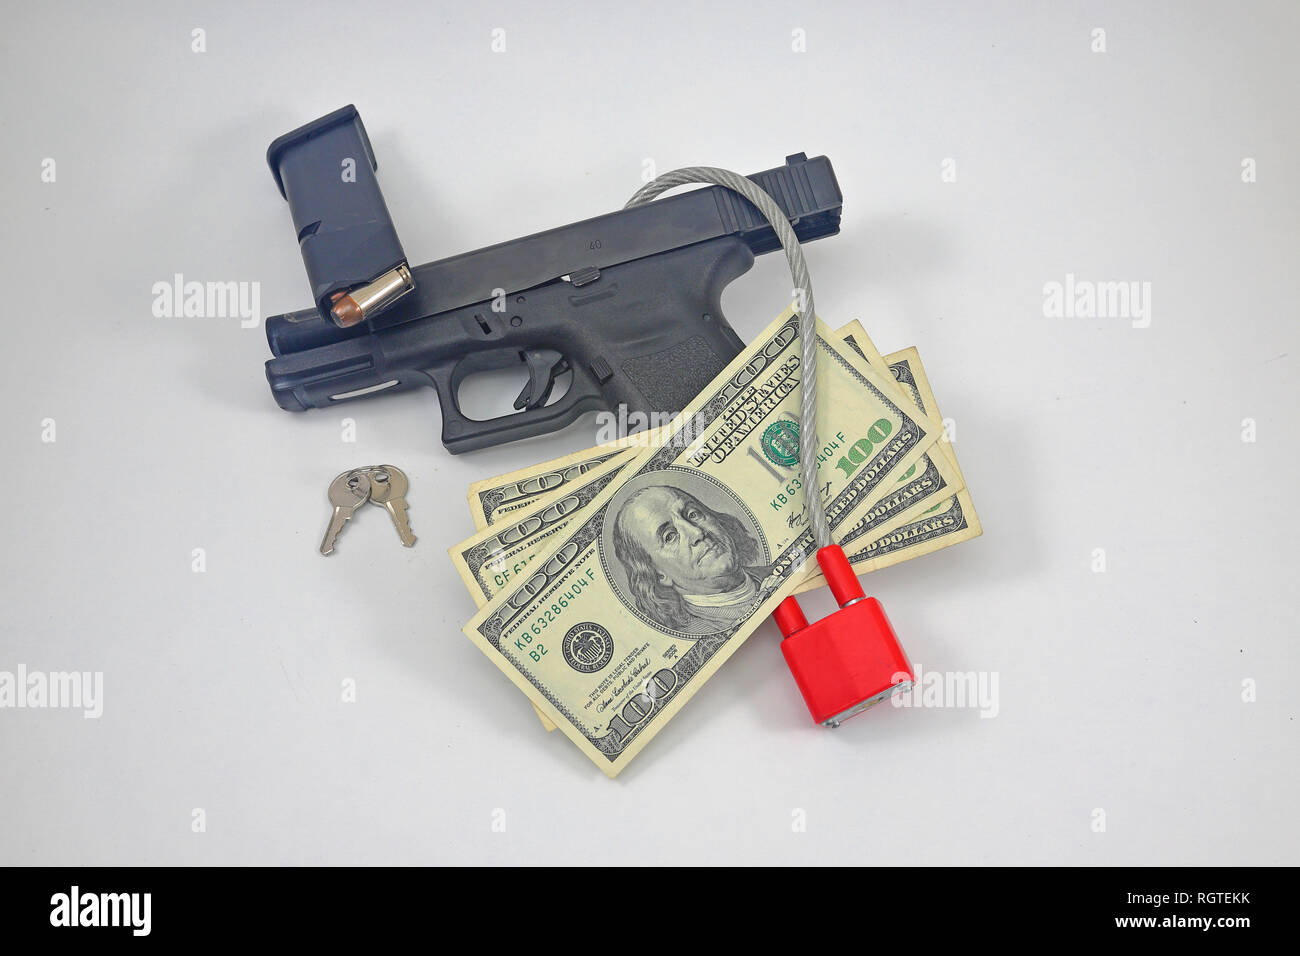 Pistole mit Schloss, Munition, Magazine, und uns Geld Währung Stockfoto